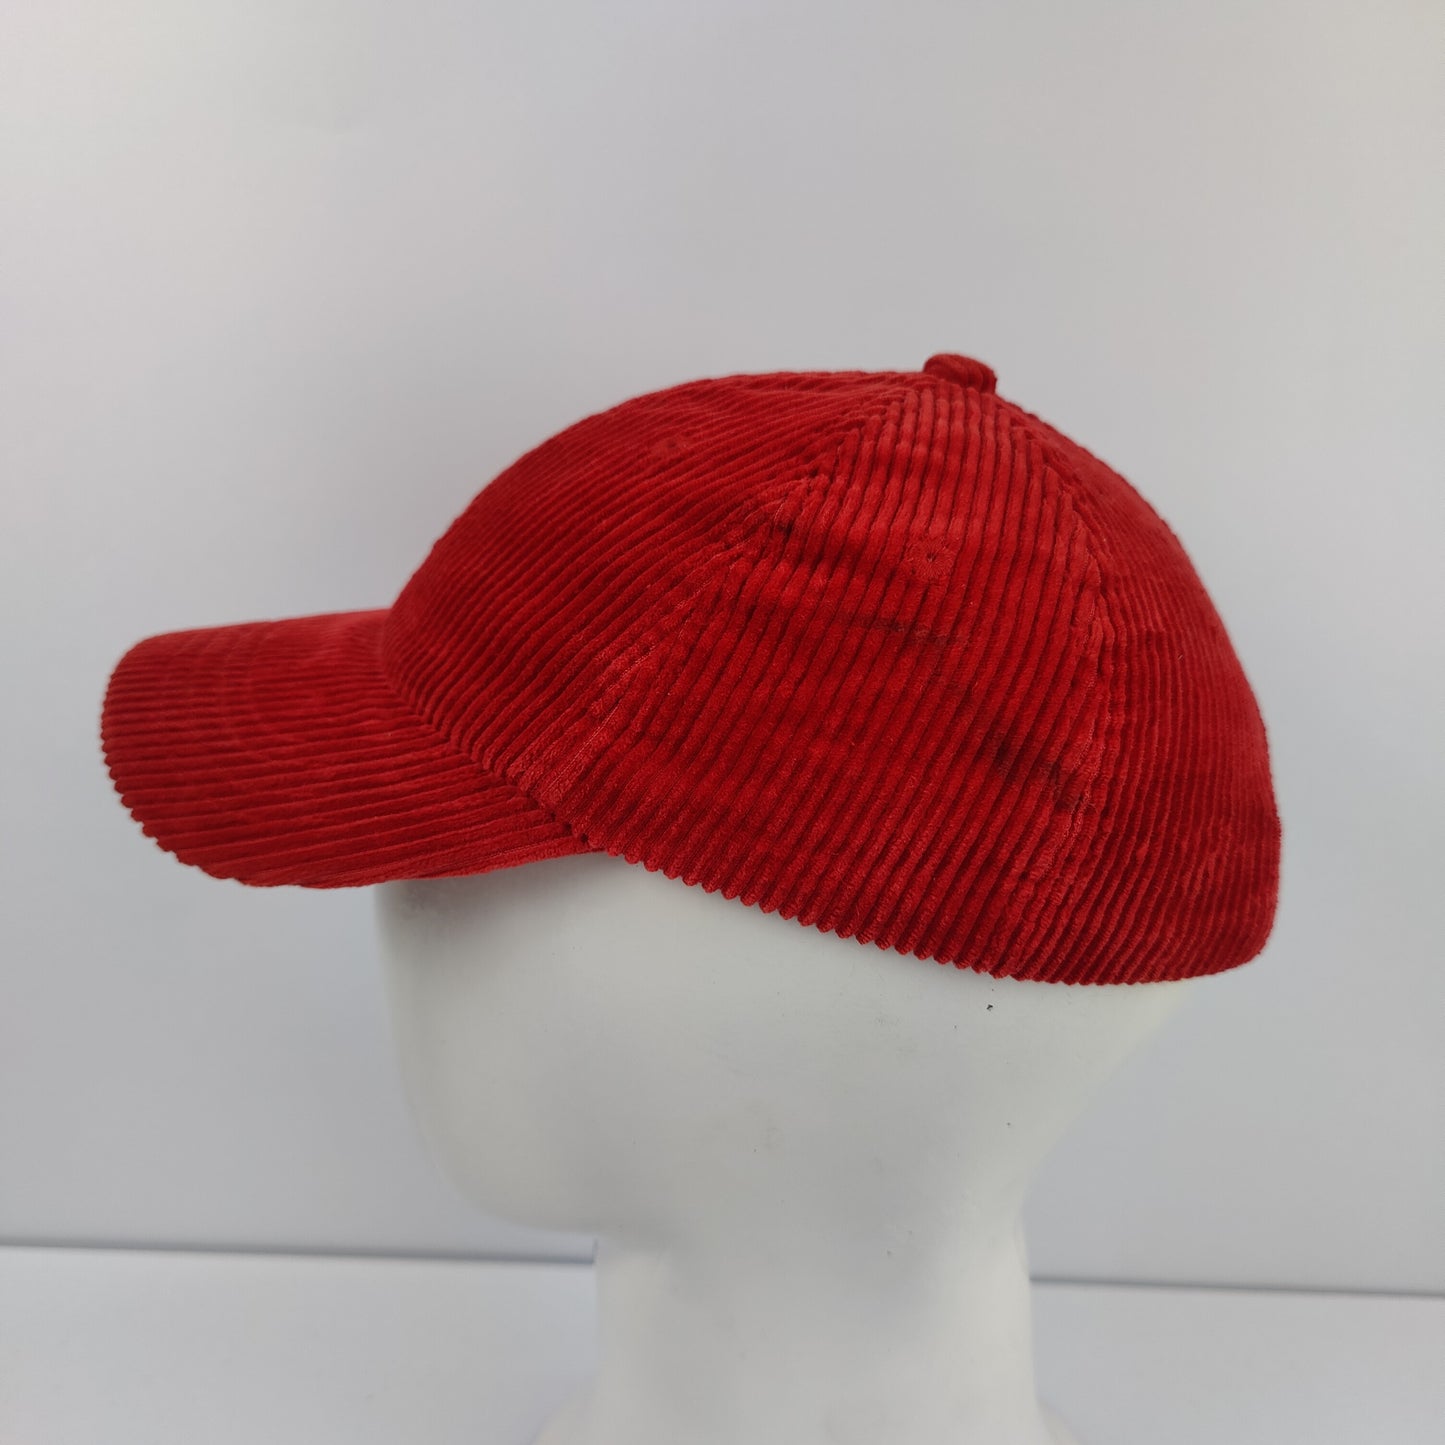 Ralph Lauren Polo Cap - Red - 1235